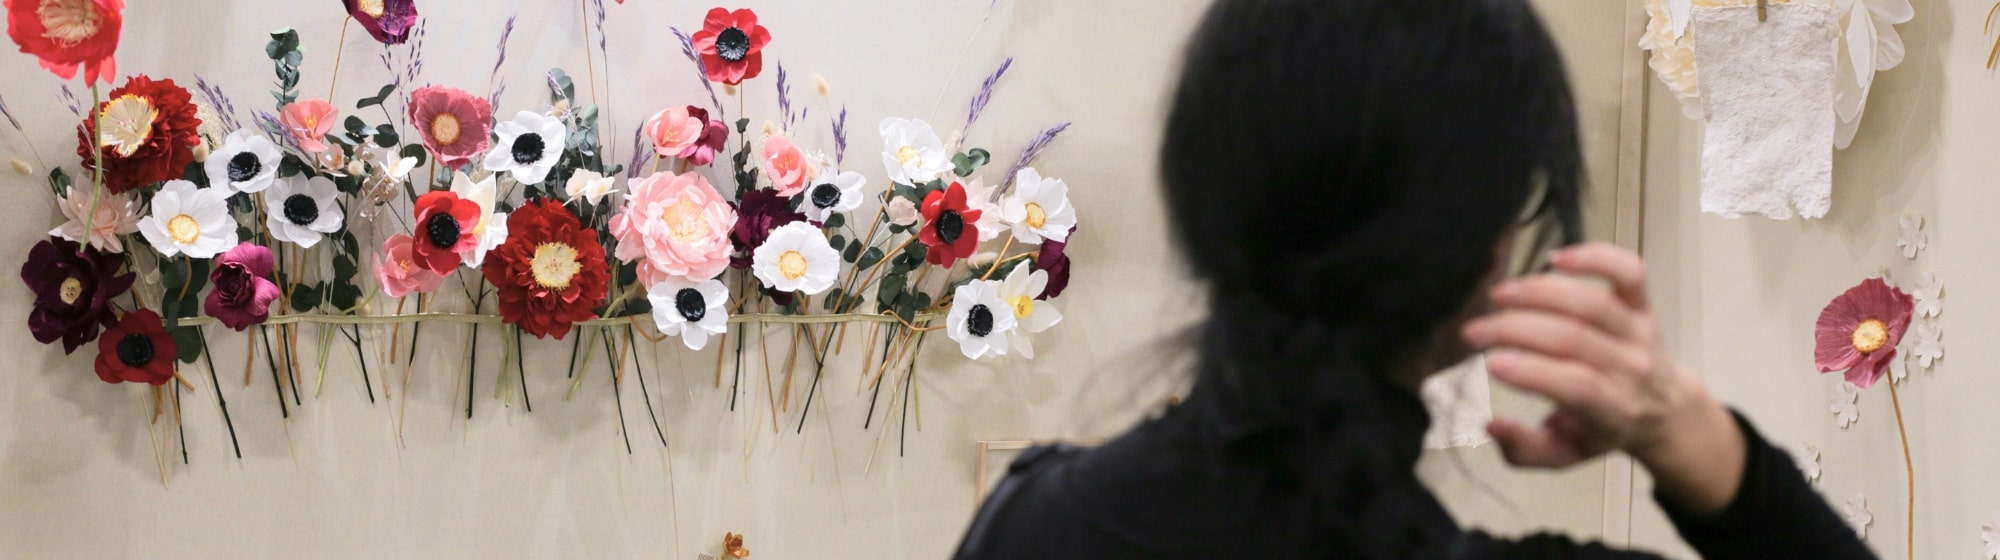 Création décoration fleurs DIY